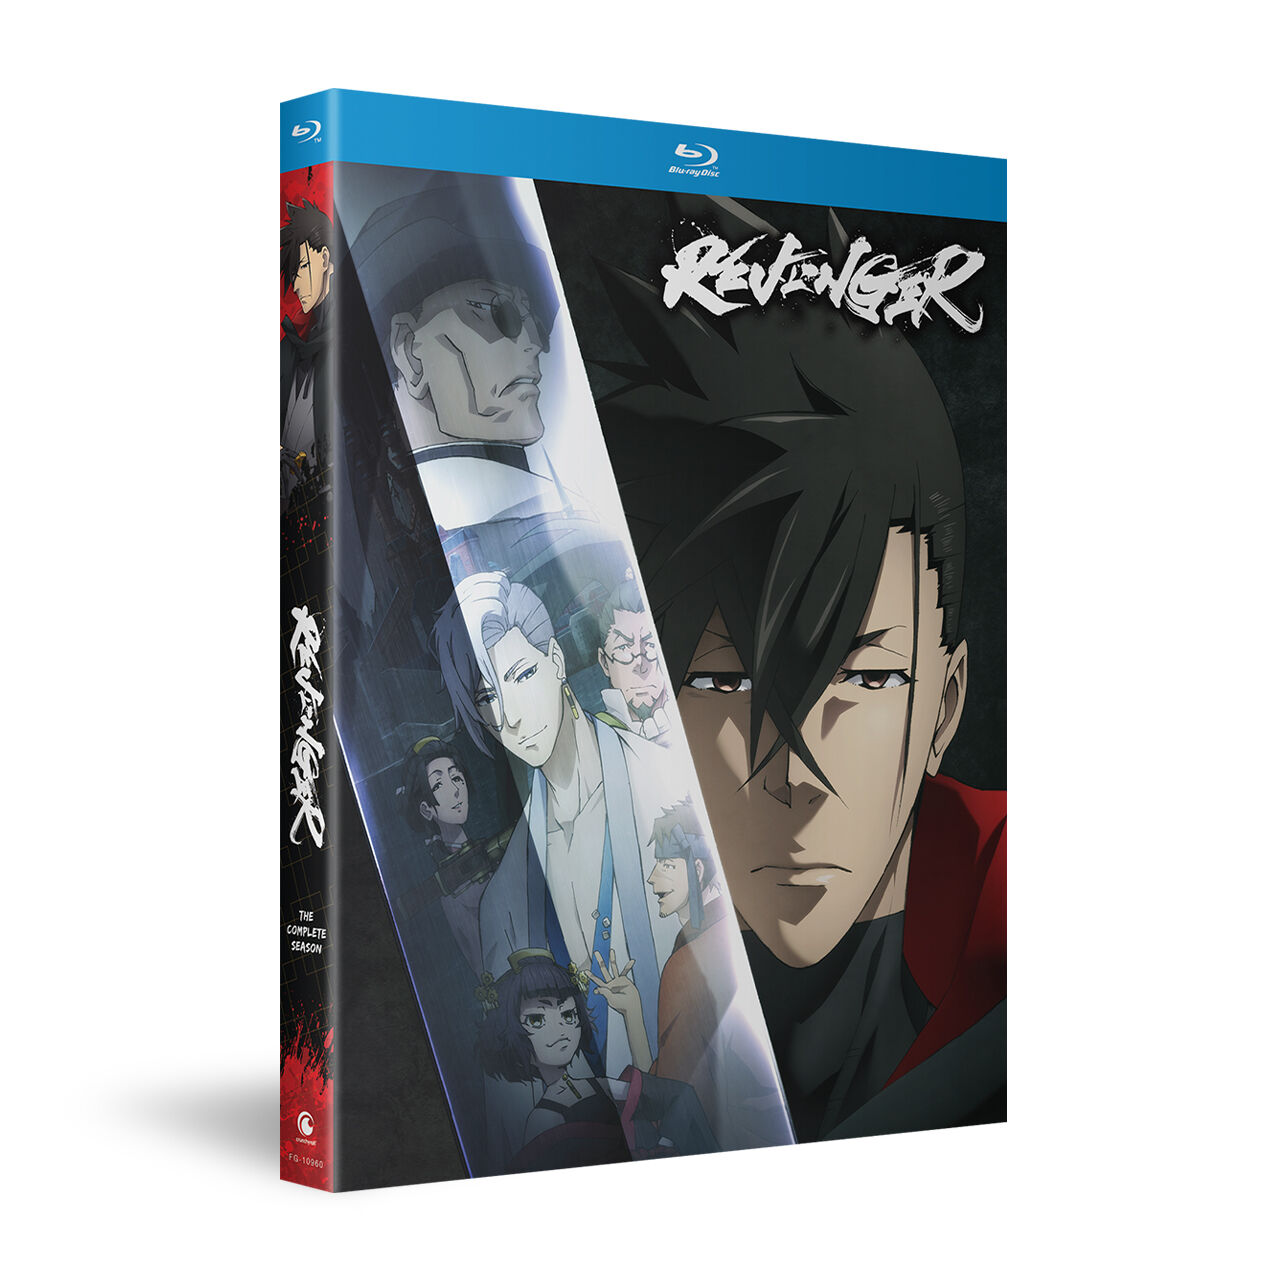 Revenger - The Complete Season - Blu-ray | Crunchyroll Store